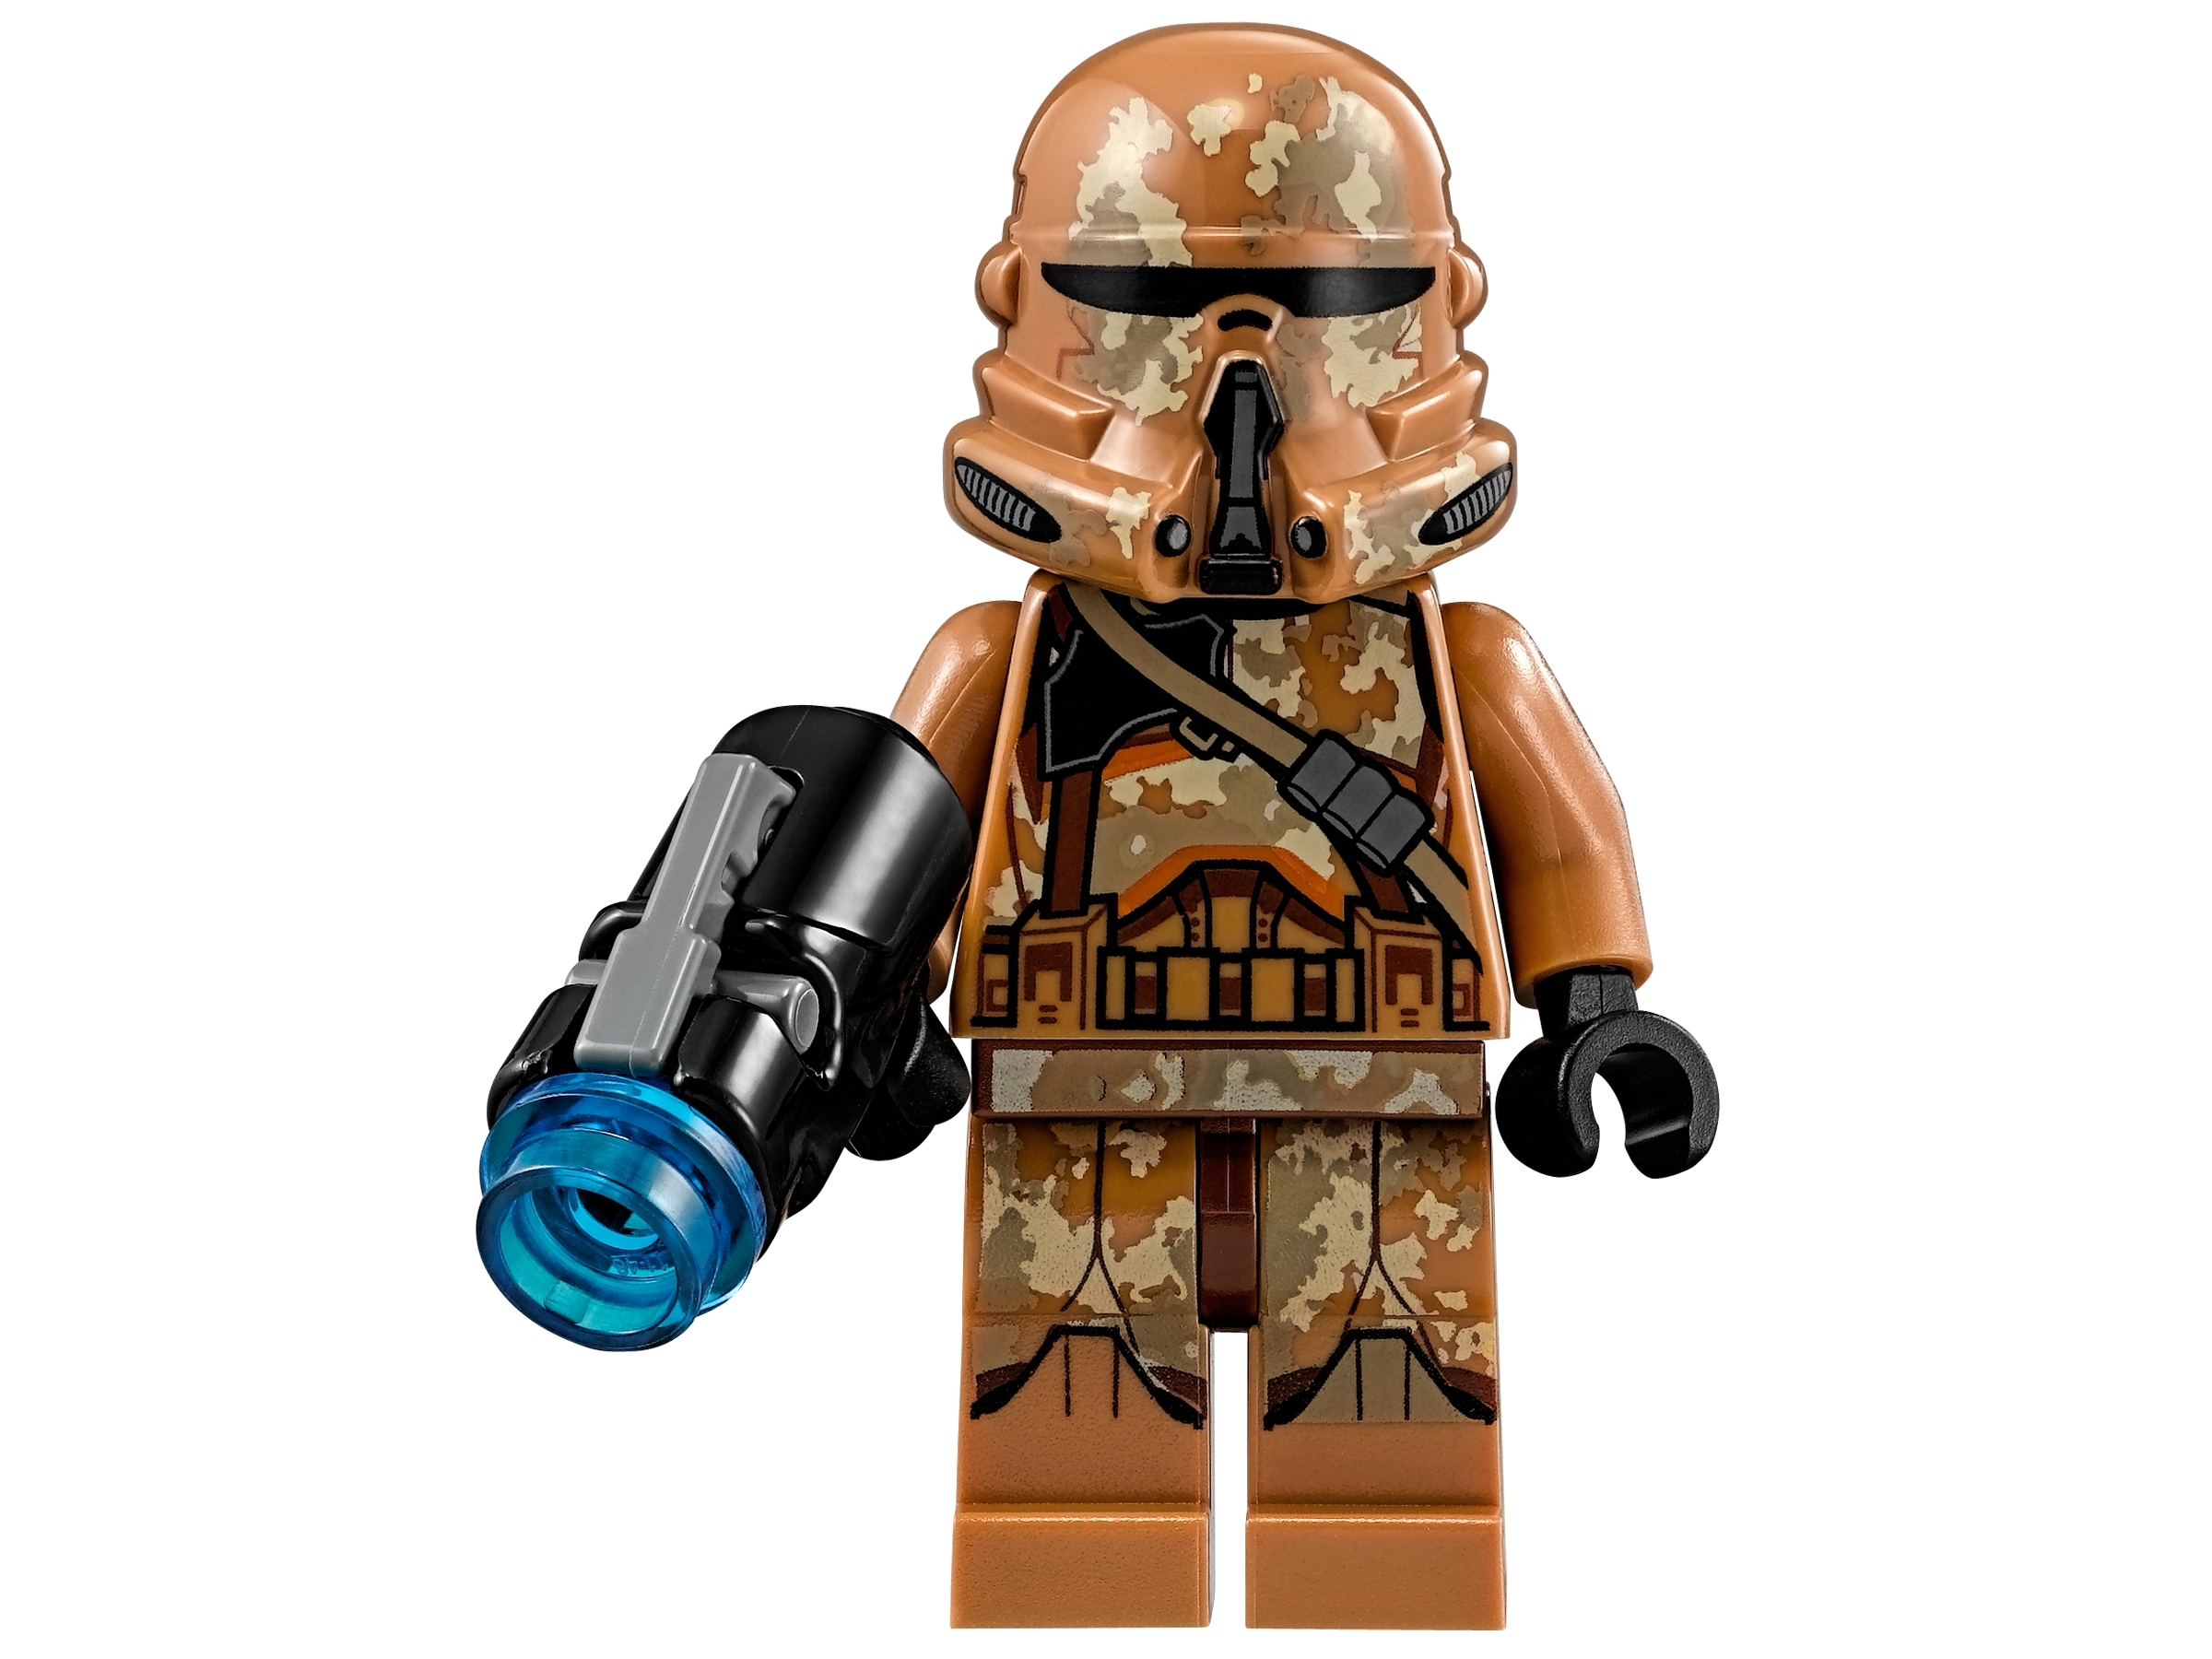 Lego Original Star Wars Clone Trooper Minifigura los Geonosis desde 75089 sw0606 Nuevo 